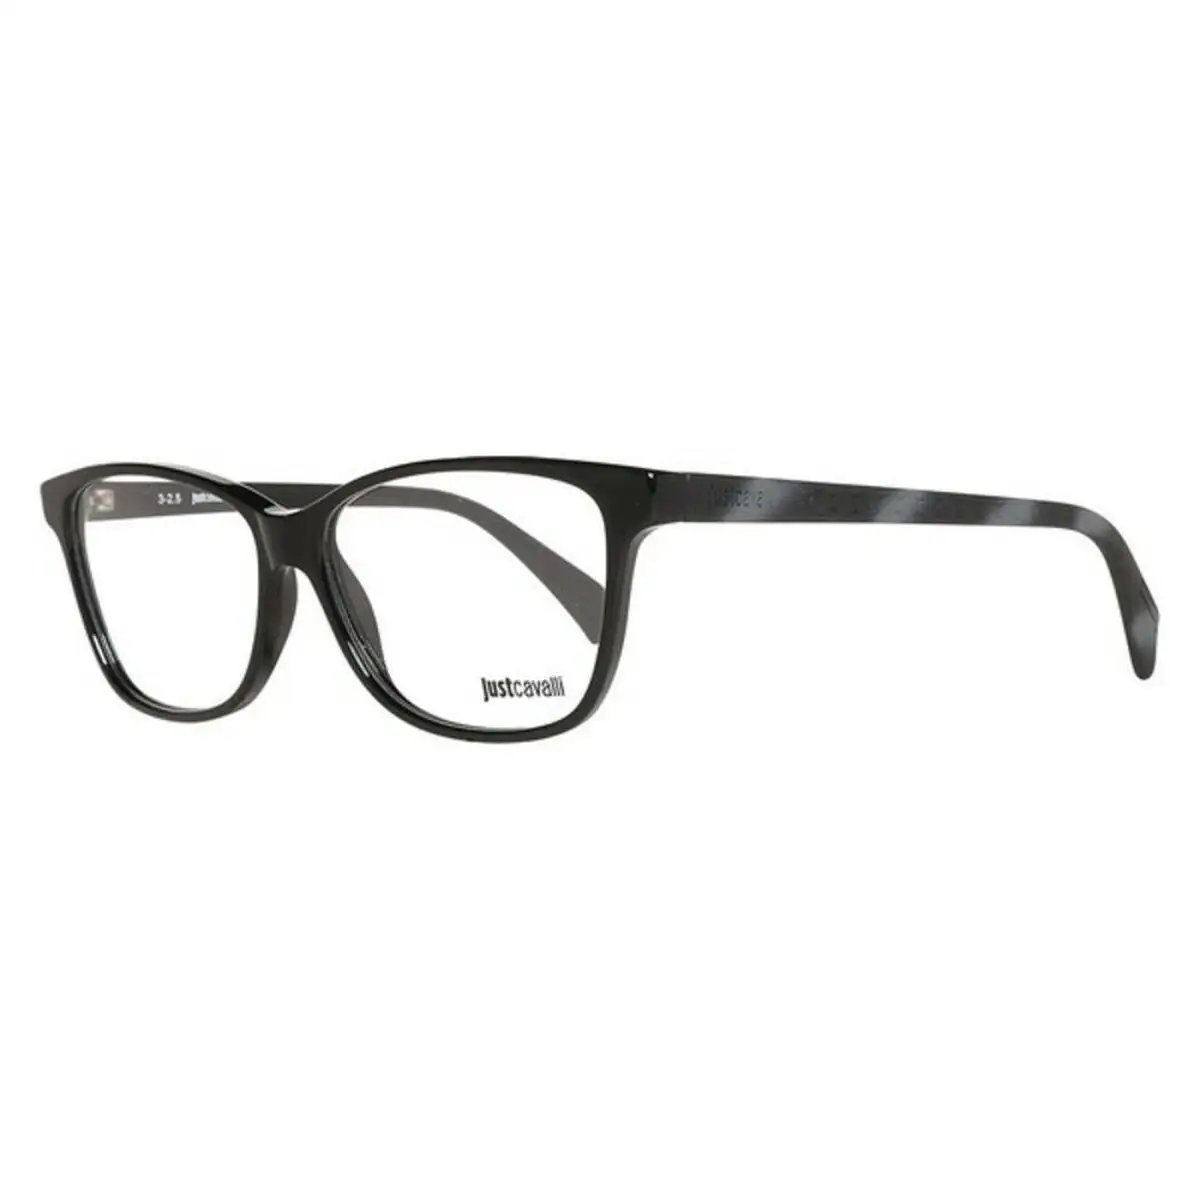 Monture de lunettes femme just cavalli jc0686 001 54 noir o 54 mm _1081. Bienvenue chez DIAYTAR SENEGAL - Où Choisir est un Voyage. Plongez dans notre plateforme en ligne pour trouver des produits qui ajoutent de la couleur et de la texture à votre quotidien.